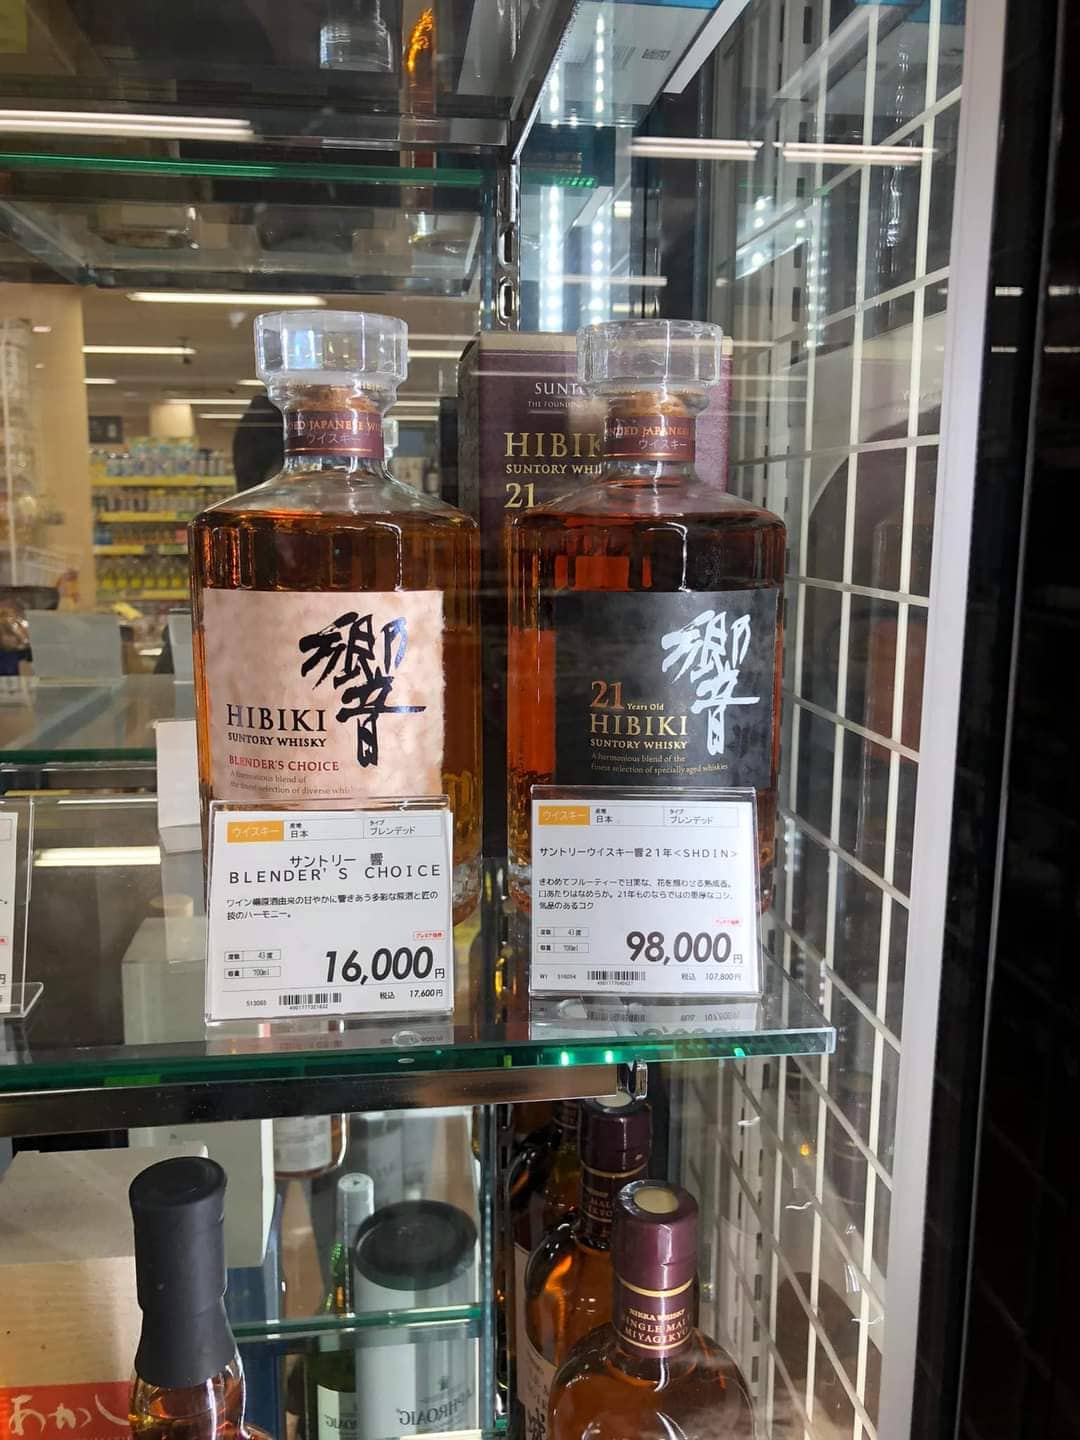 Giá rượu Hibiki 21 năm tại cửa hàng nội địa Nhật